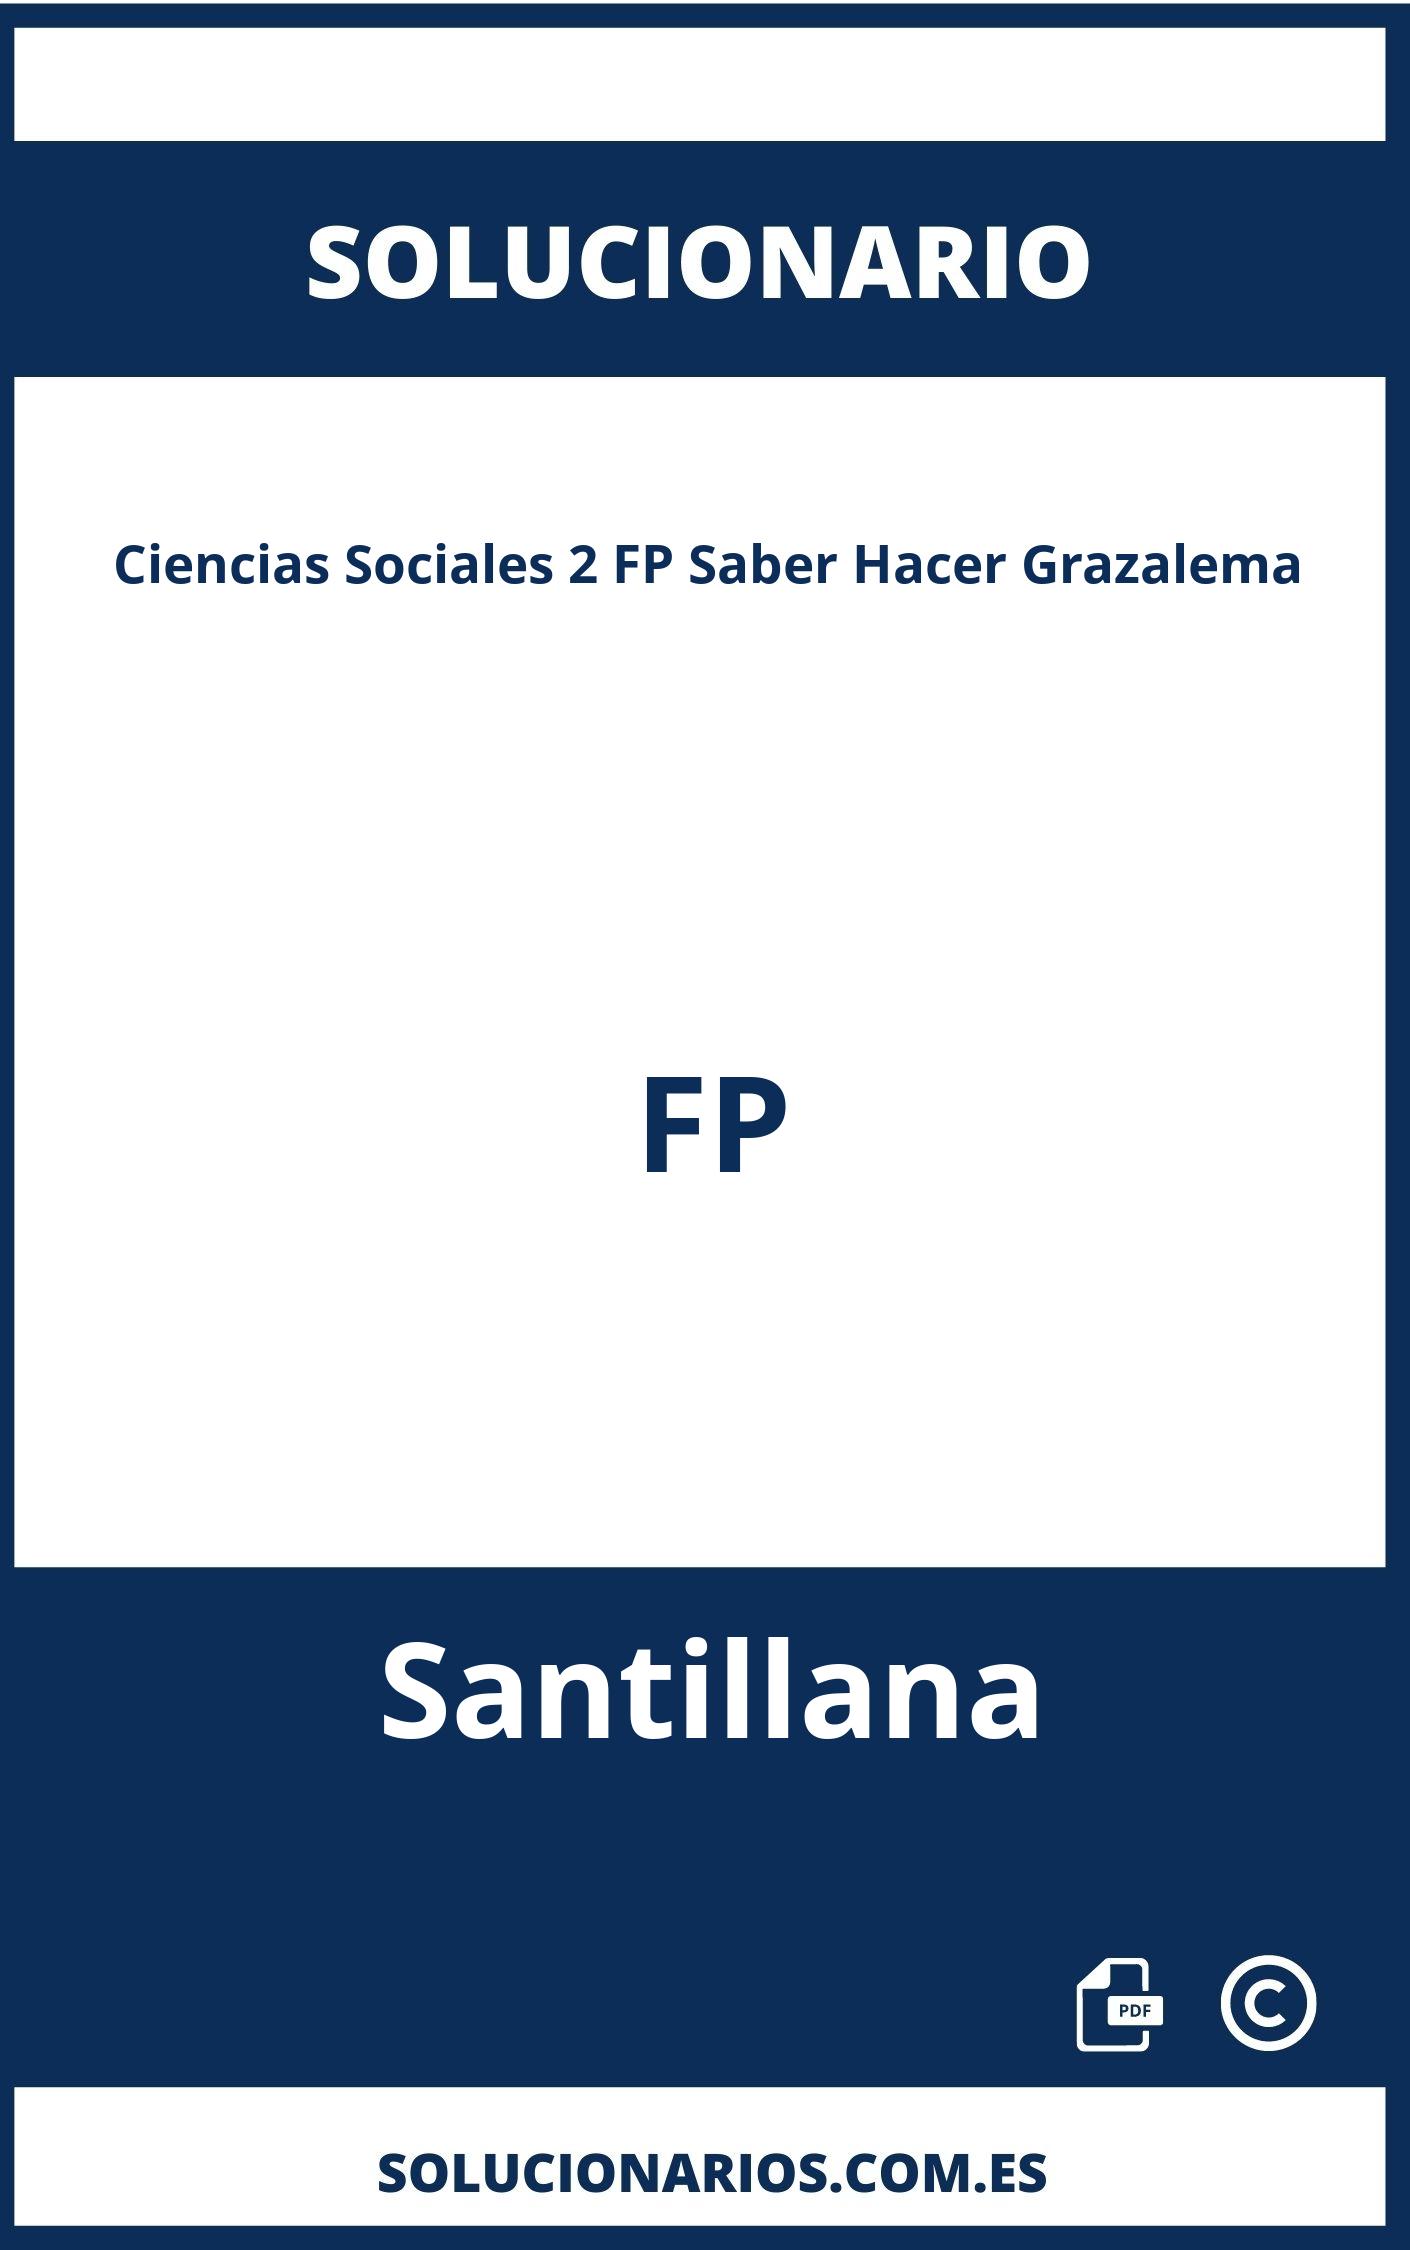 Solucionario Ciencias Sociales 2 FP Saber Hacer Grazalema FP Santillana